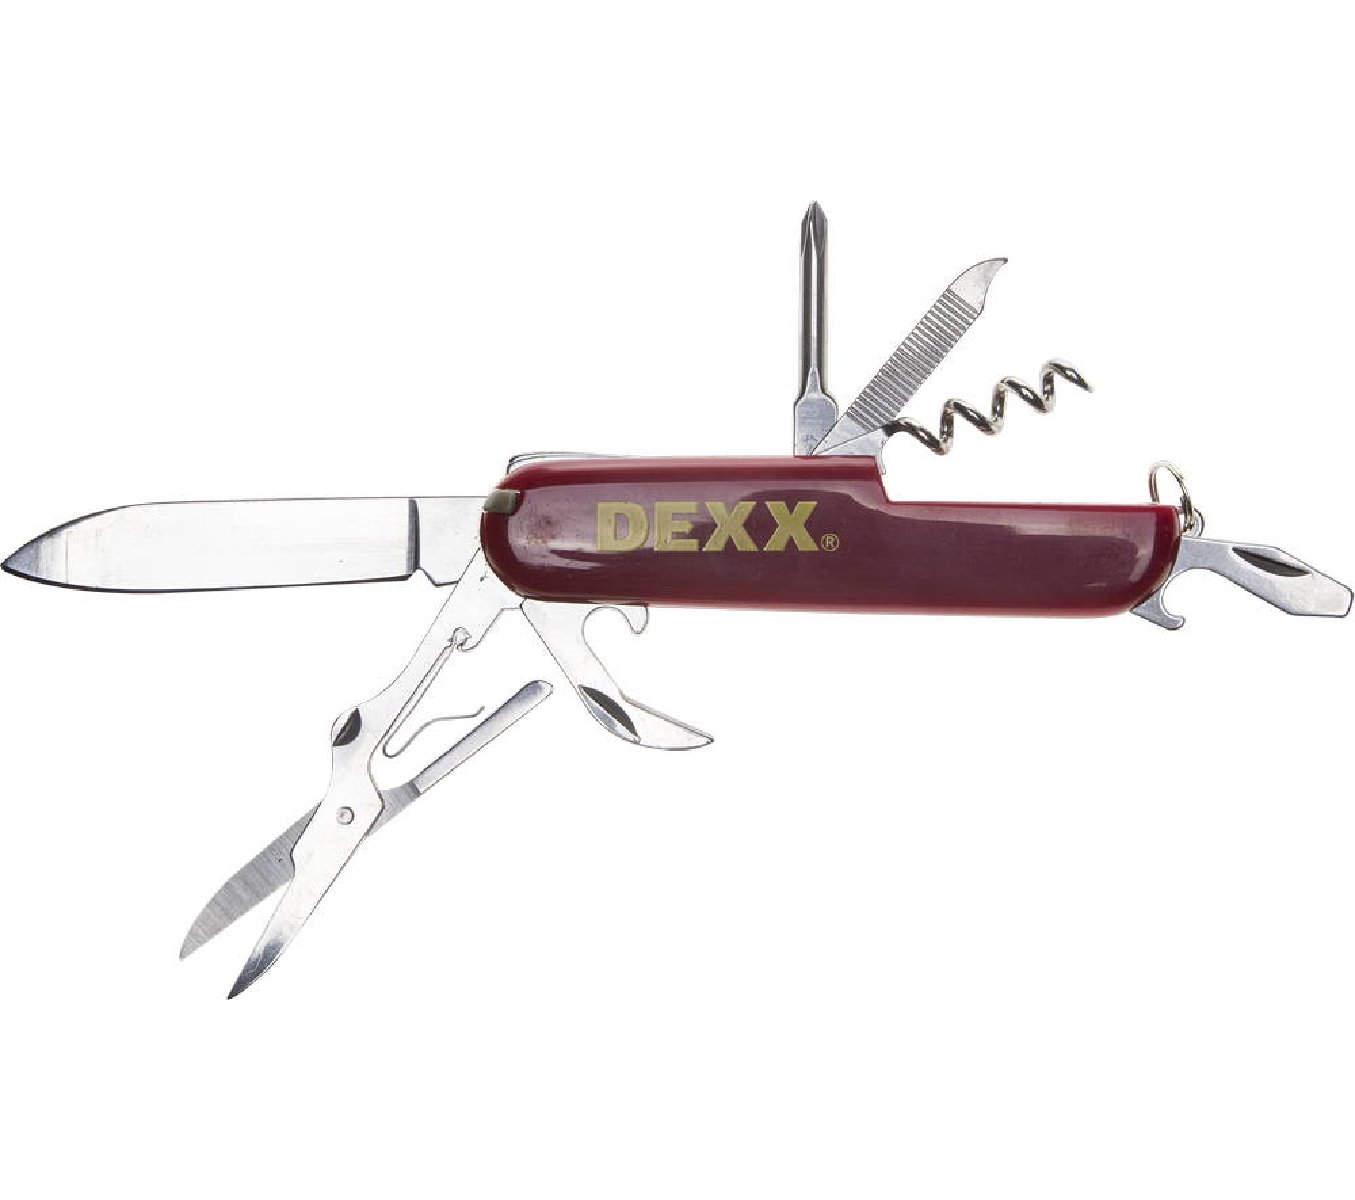 Многофункциональный нож DEXX 10 функций складной пластиковая рукоятка (47645)Купить